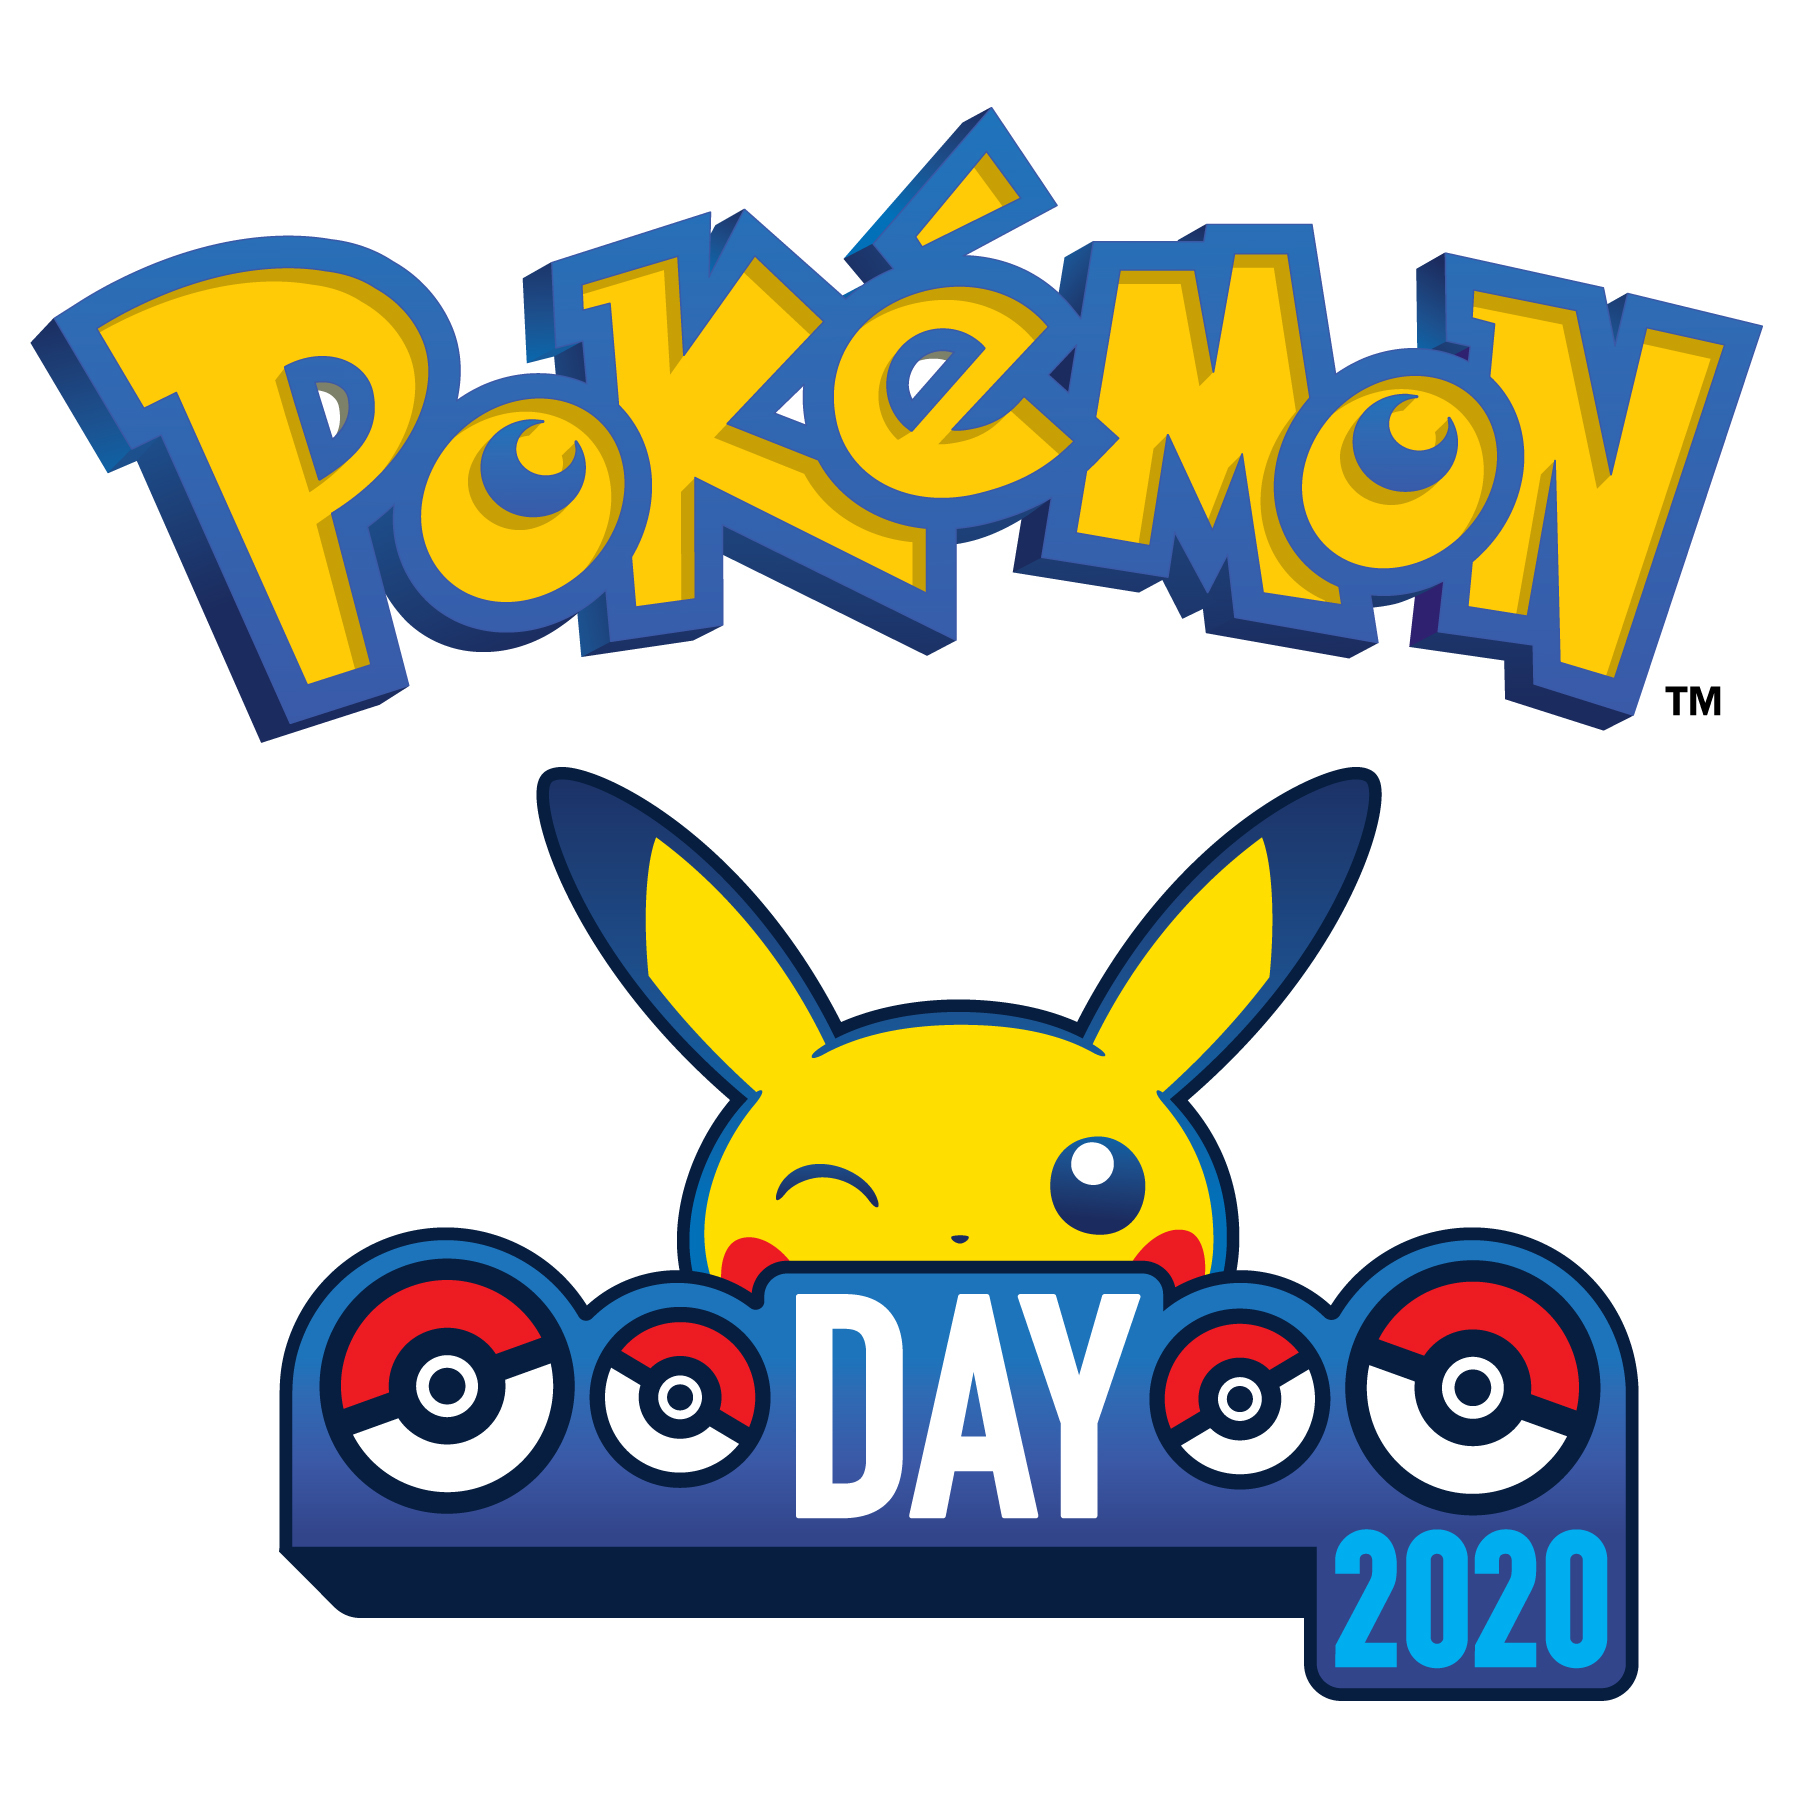 2月27日 Pokemon Day 記念企画 ポケモン オブ ザ イヤー 開催 お気に入りのポケモンに投票しよう Spice エンタメ特化型情報メディア スパイス